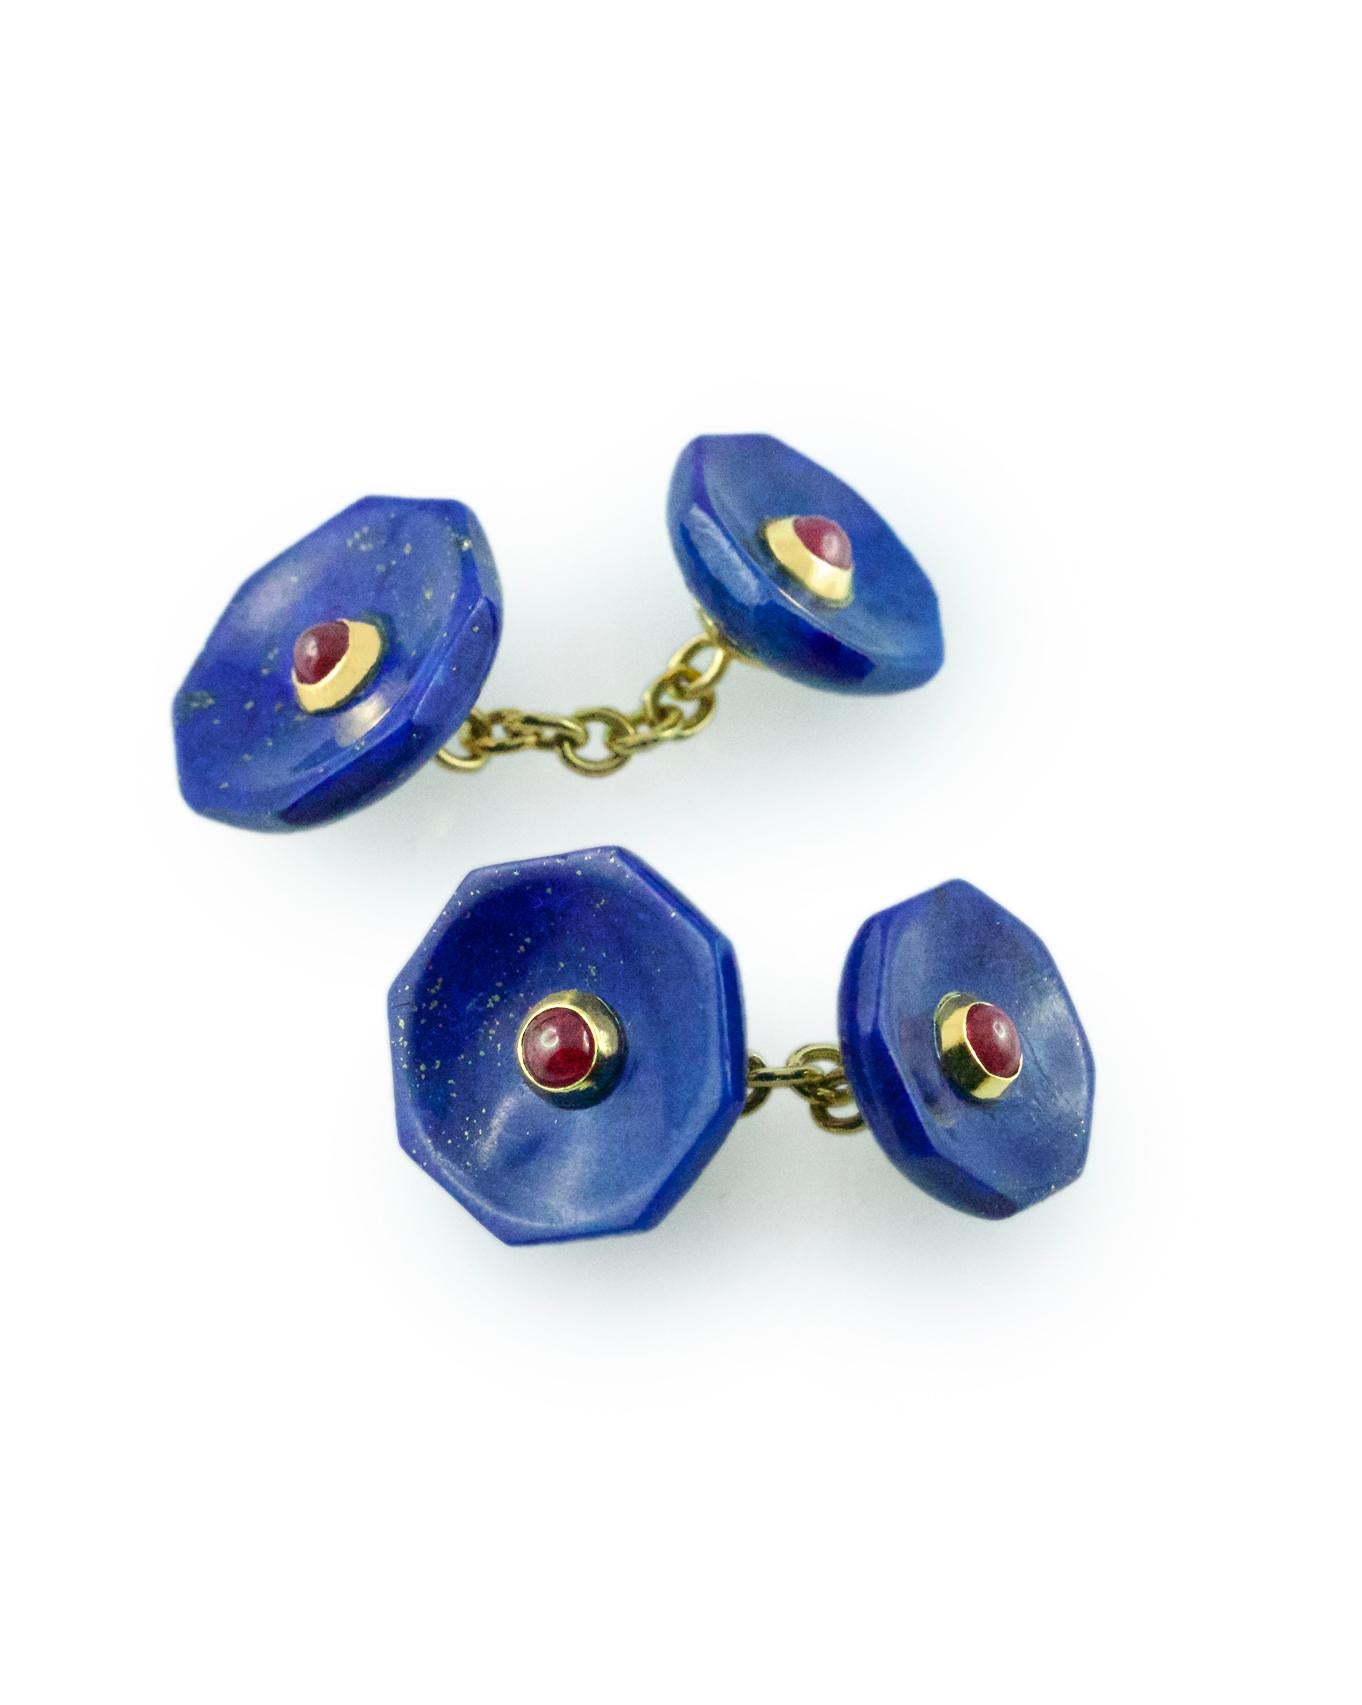 Ces boutons de manchette sont à la fois classiques et audacieux et présentent une face avant octogonale et un bouton à bascule de forme identique, tous deux en lapis-lazuli avec une décoration centrale en rubis cabochon qui crée une combinaison de